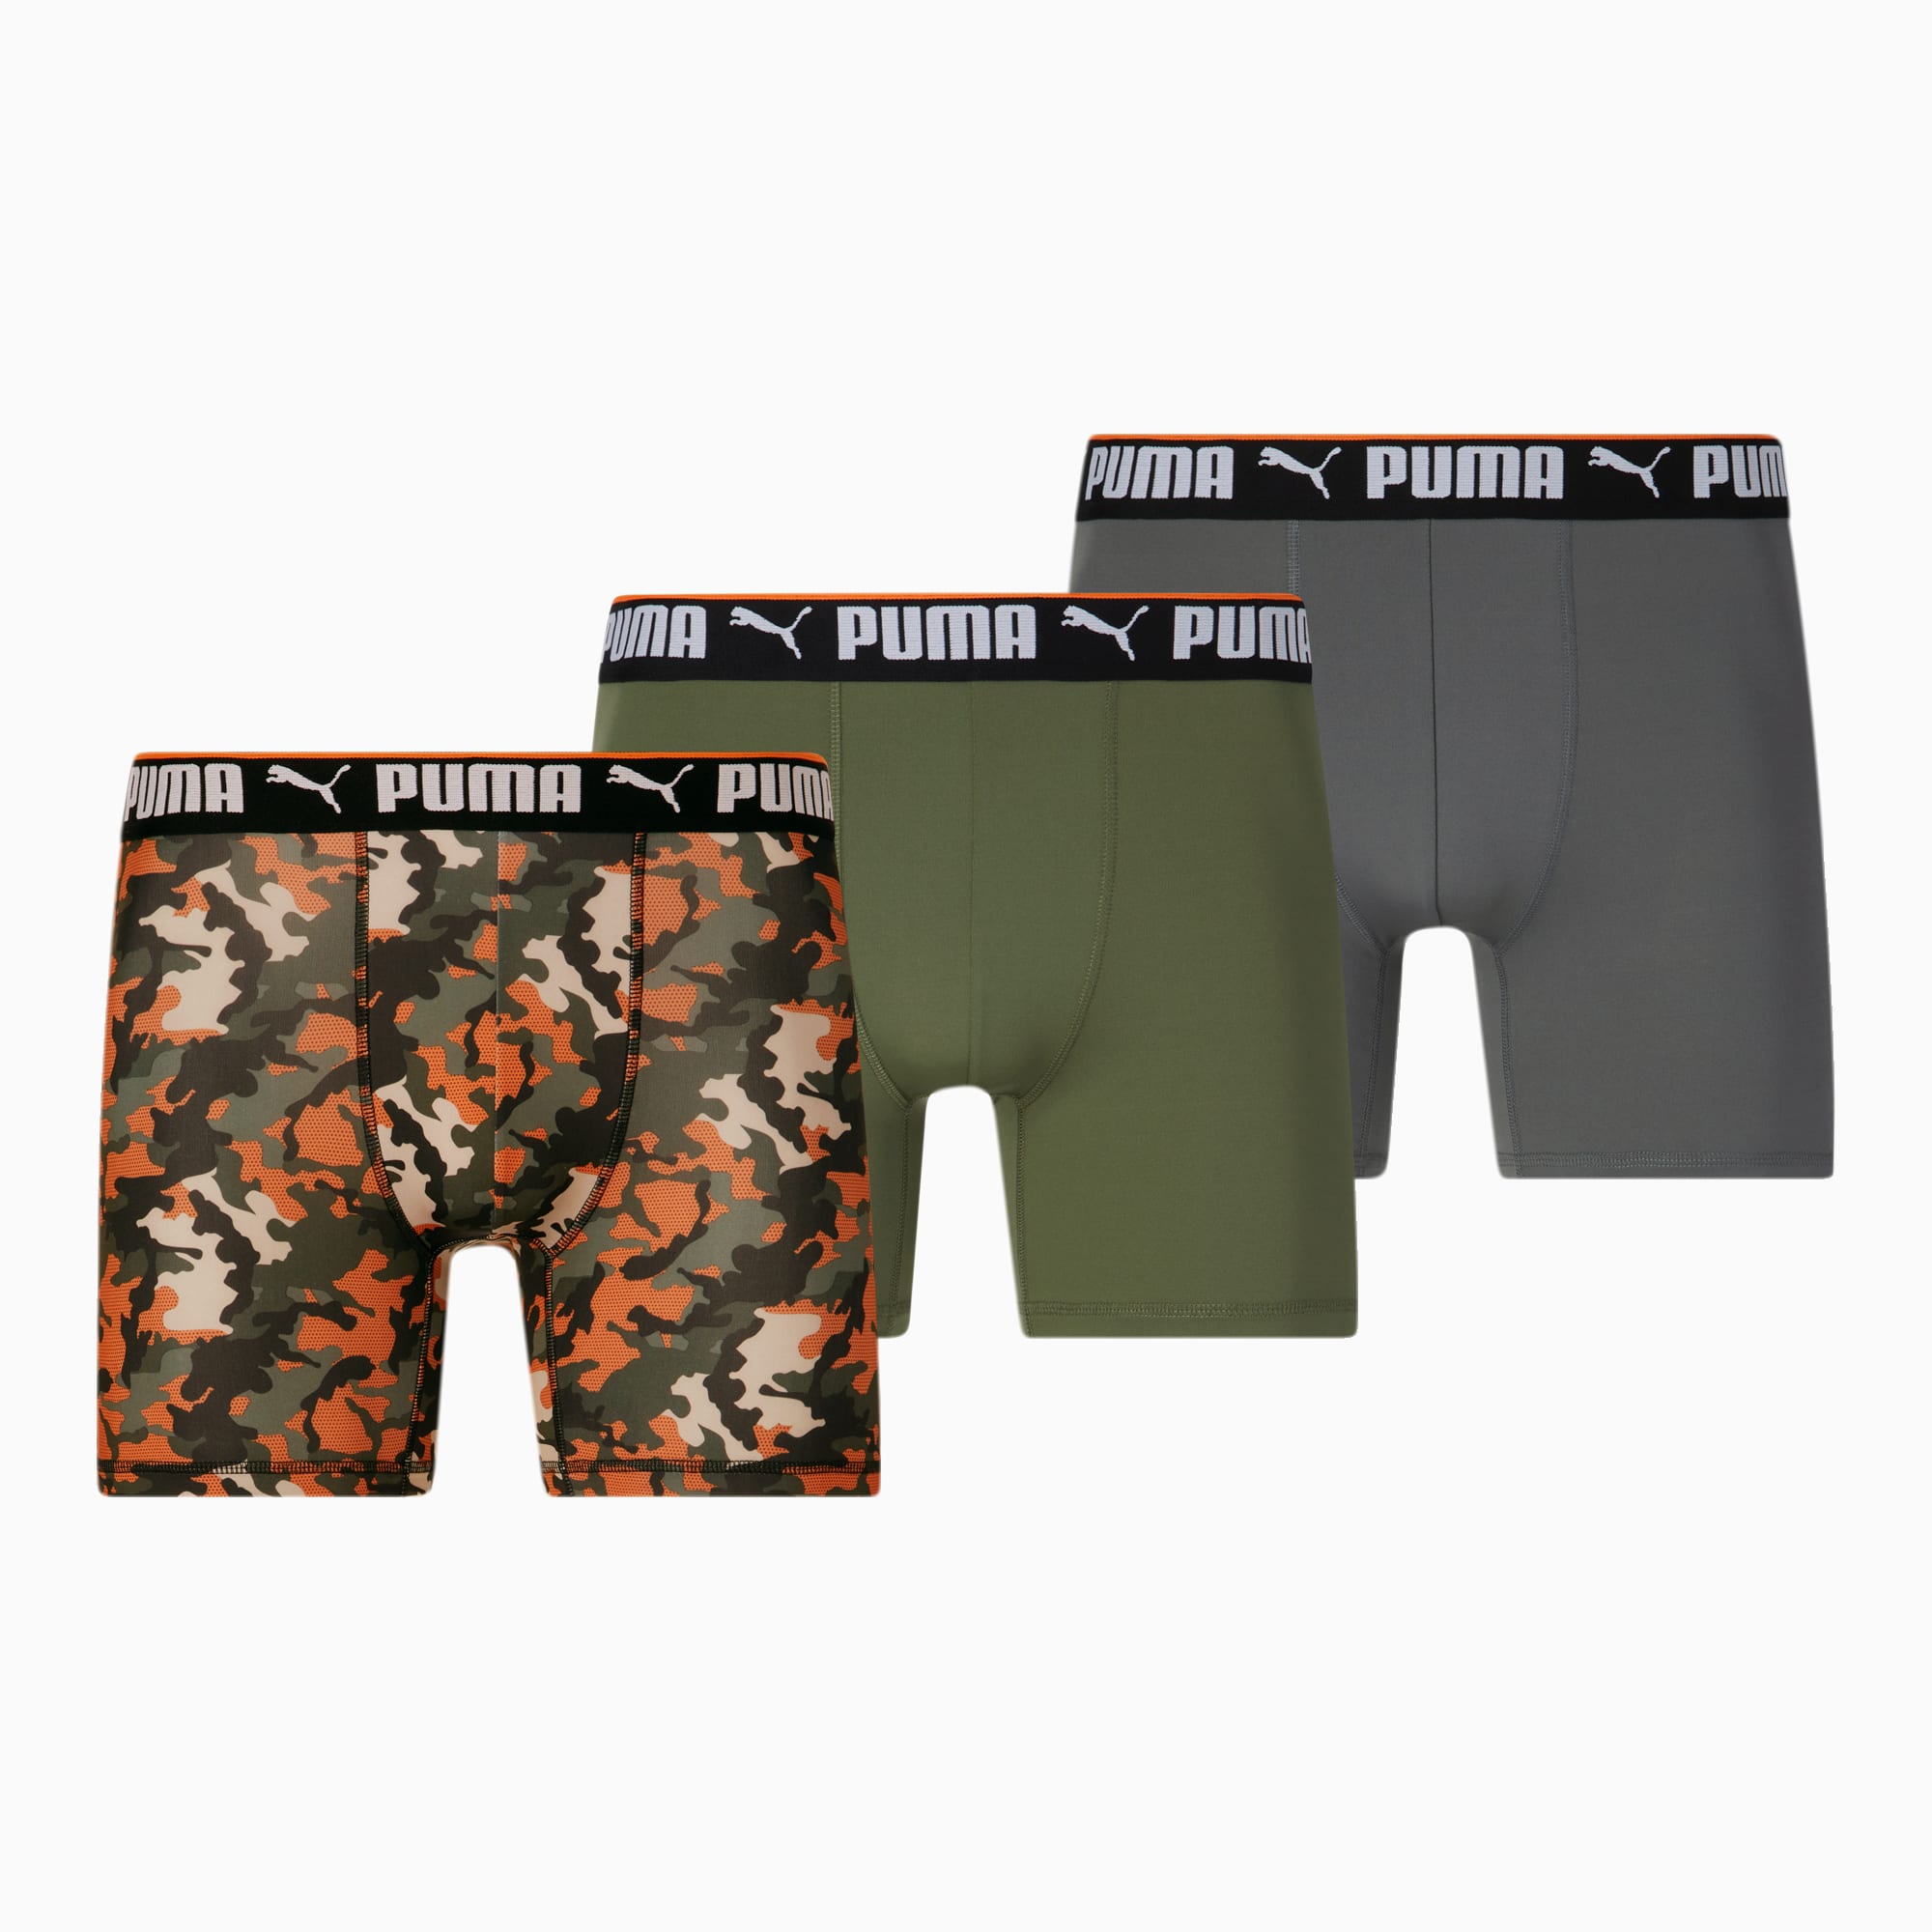 PUMA Men's Performance Boxer Briefs Underwear (3 Pack)